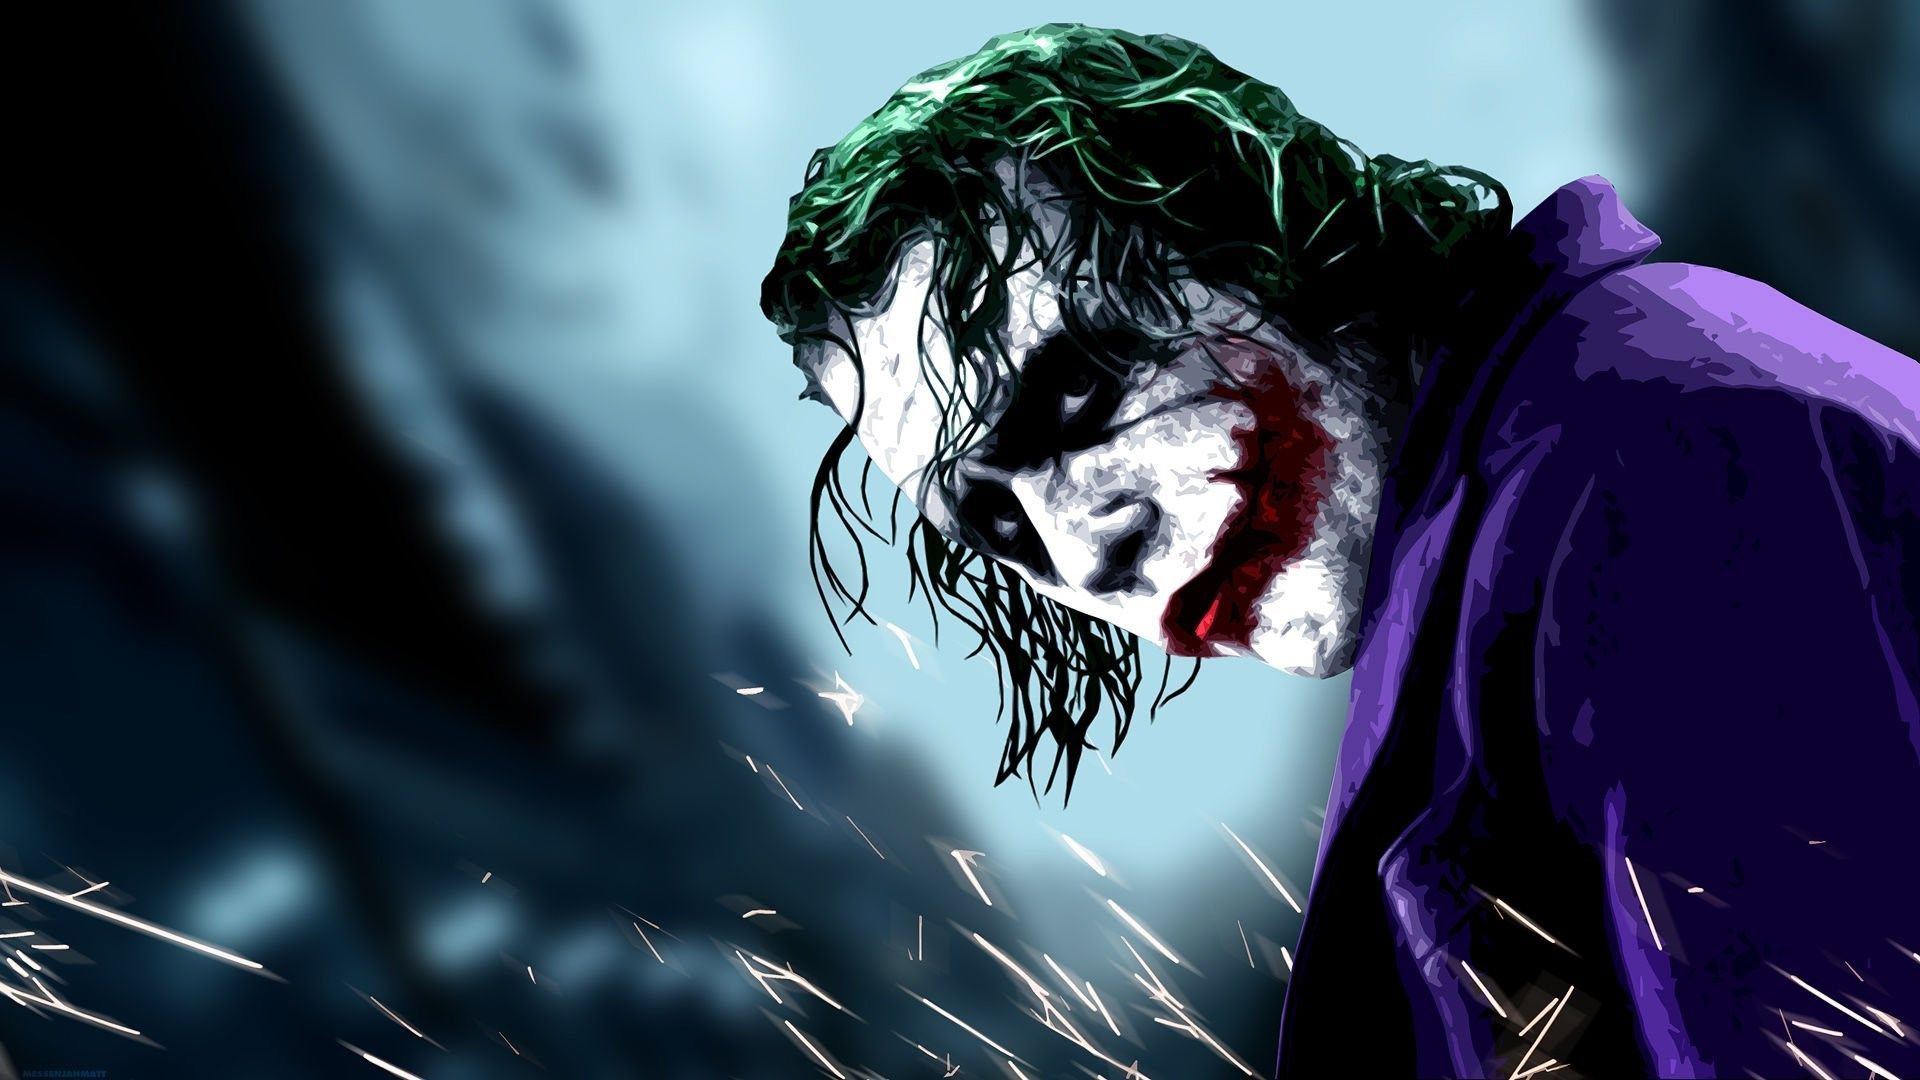 joker theme background image. Joker wallpaper, Joker image, Joker HD wallpaper